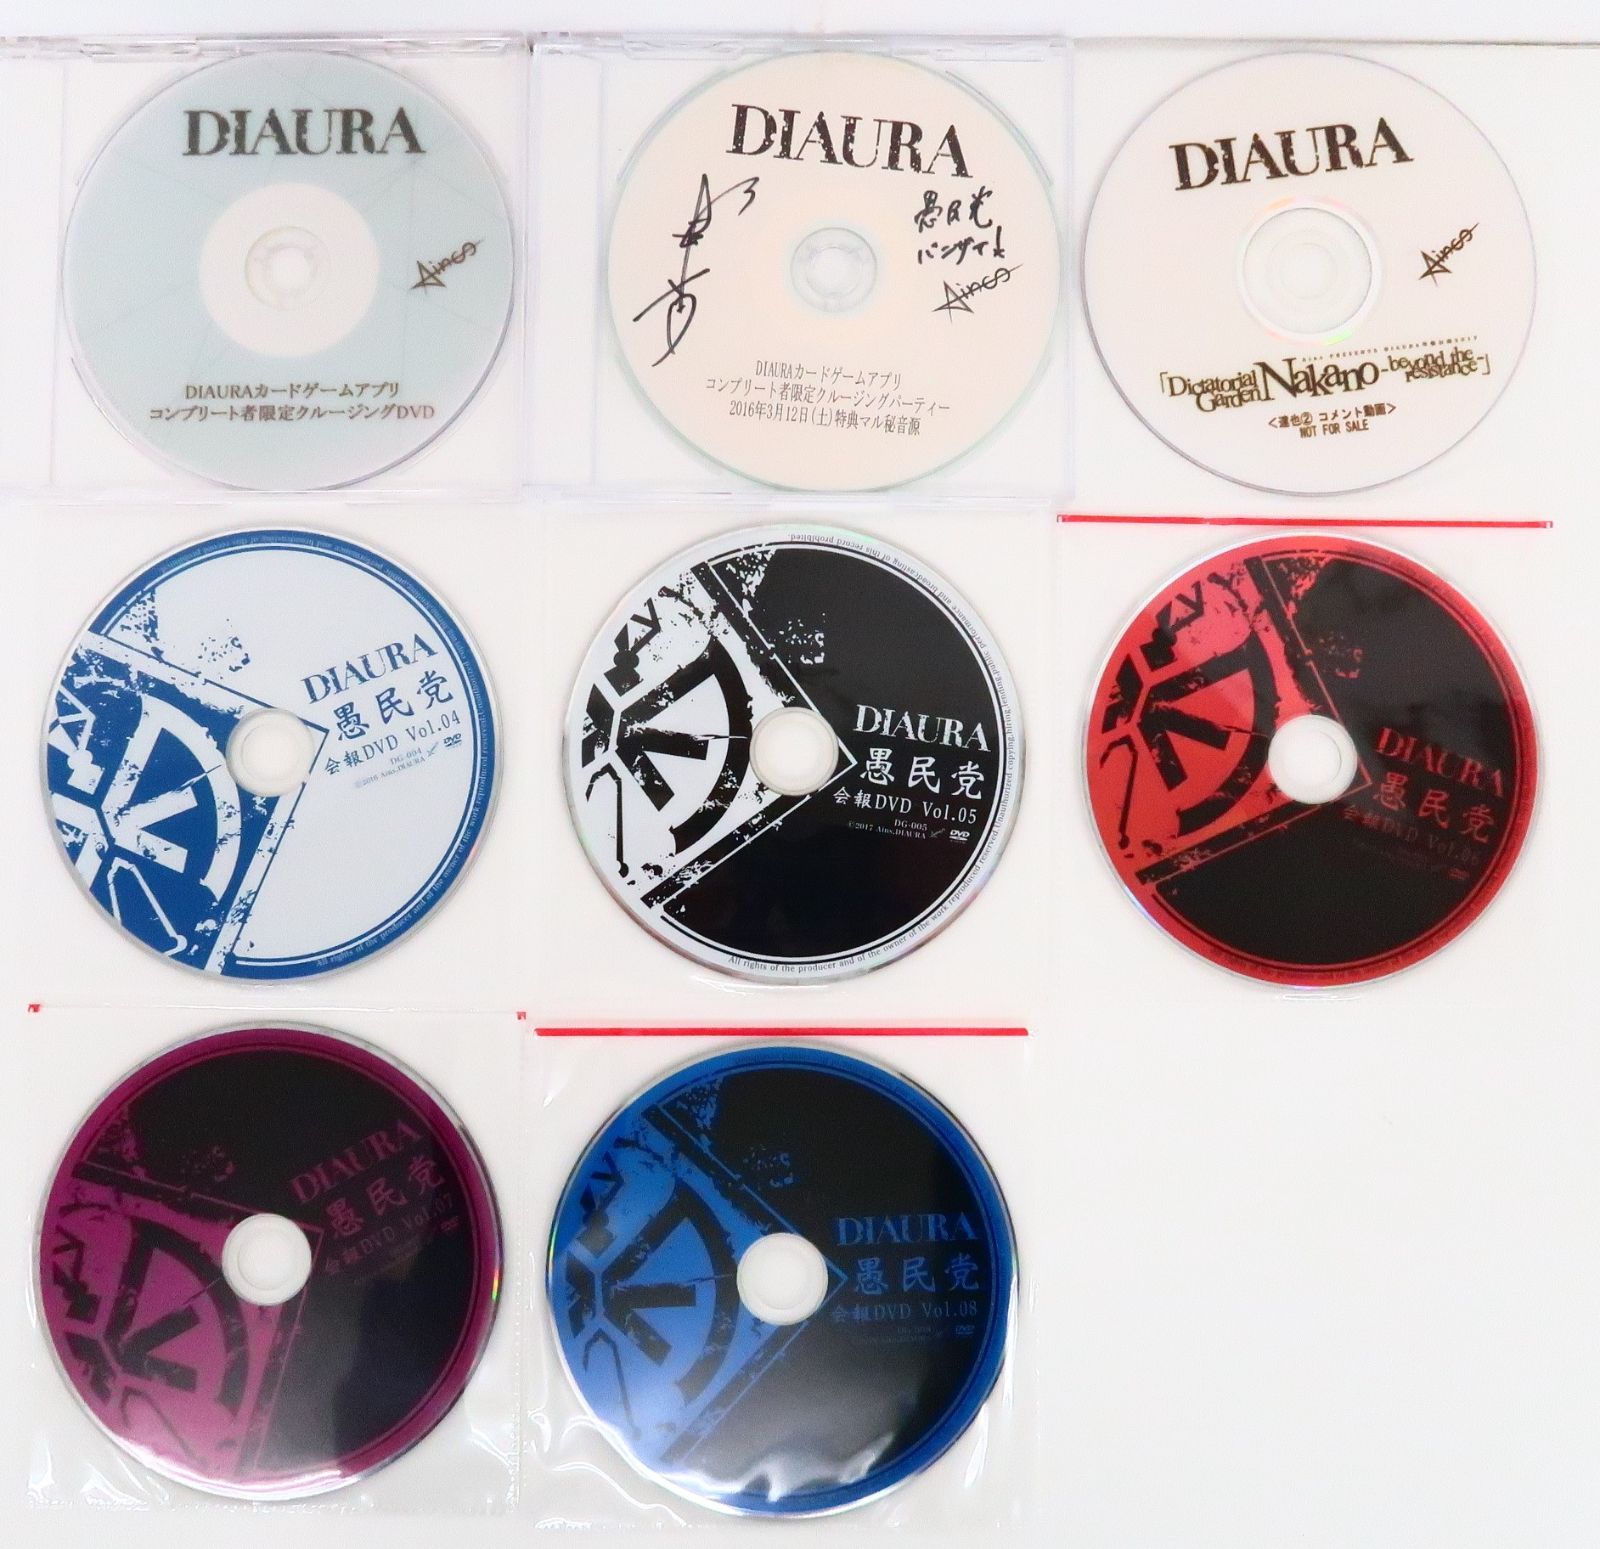 8枚セット DIAURA 愚民党 会報DVD Vol.04-08/達也 コメント動画 